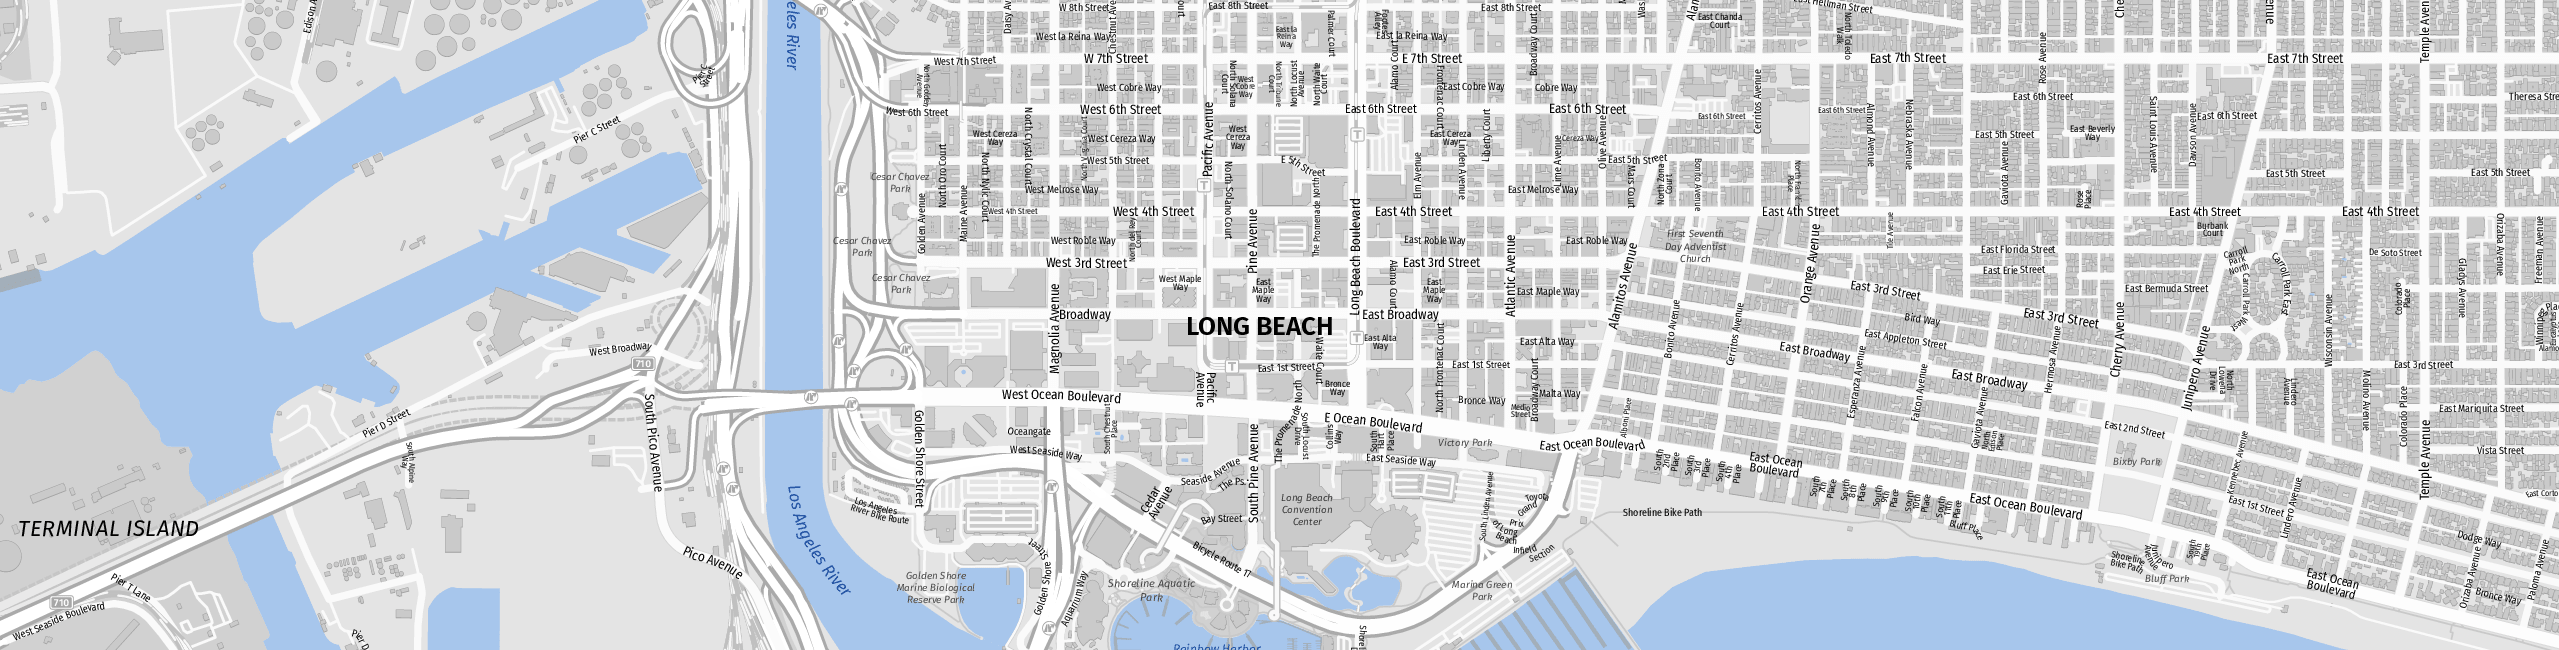 Stadtplan Long Beach zum Downloaden.